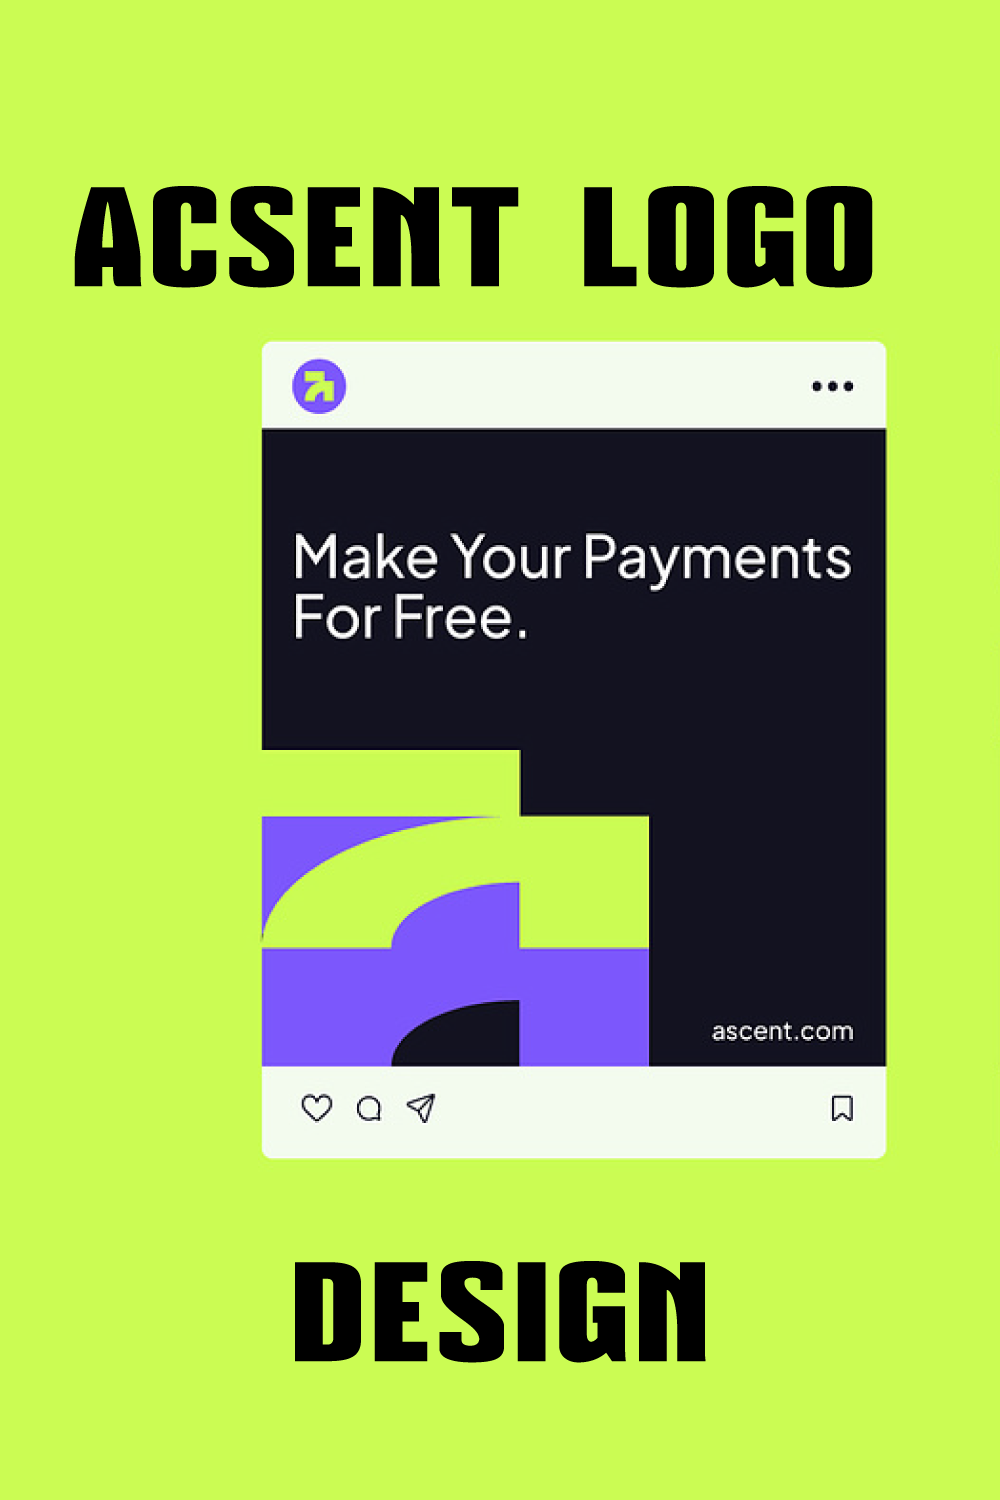 ascent logo design for finance or online pinterest preview image.